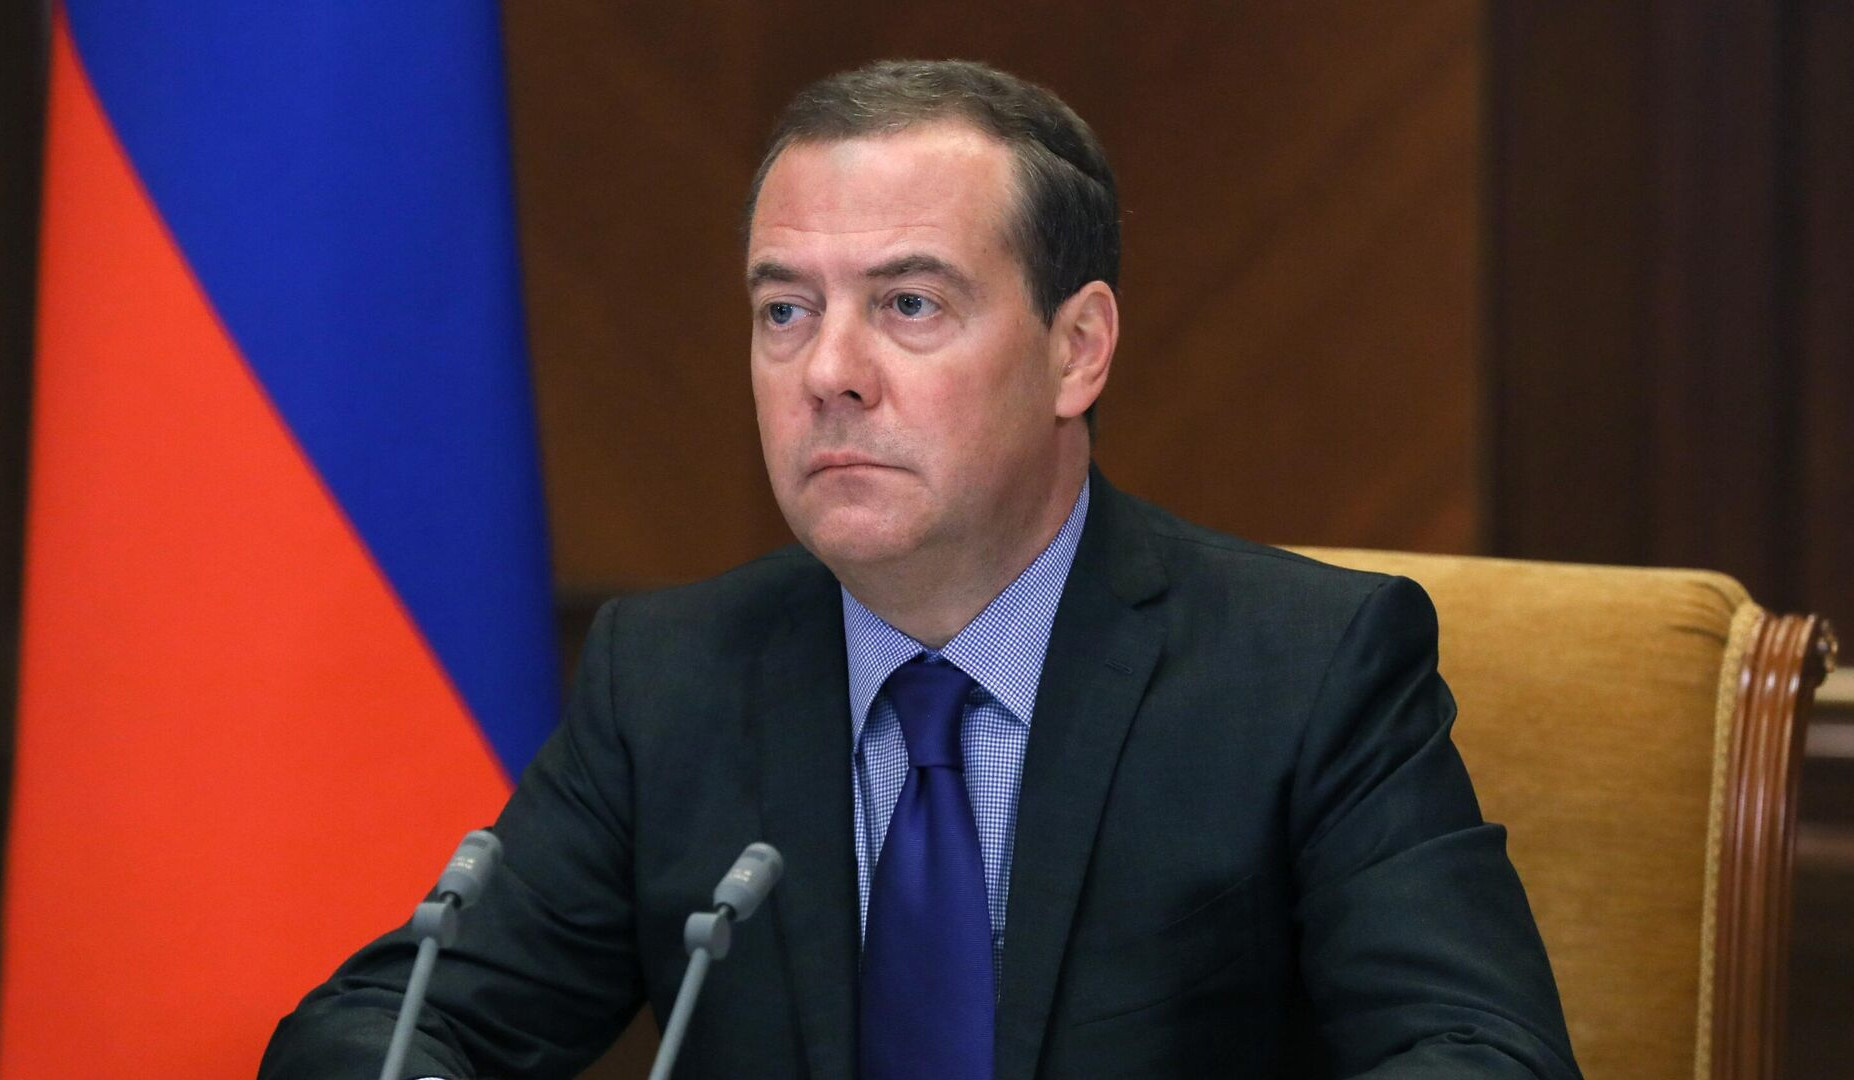 Ответ Москвы на угрозы, связанные с членством Швеции и Финляндии в НАТО, будет пропорциональным: Медведев